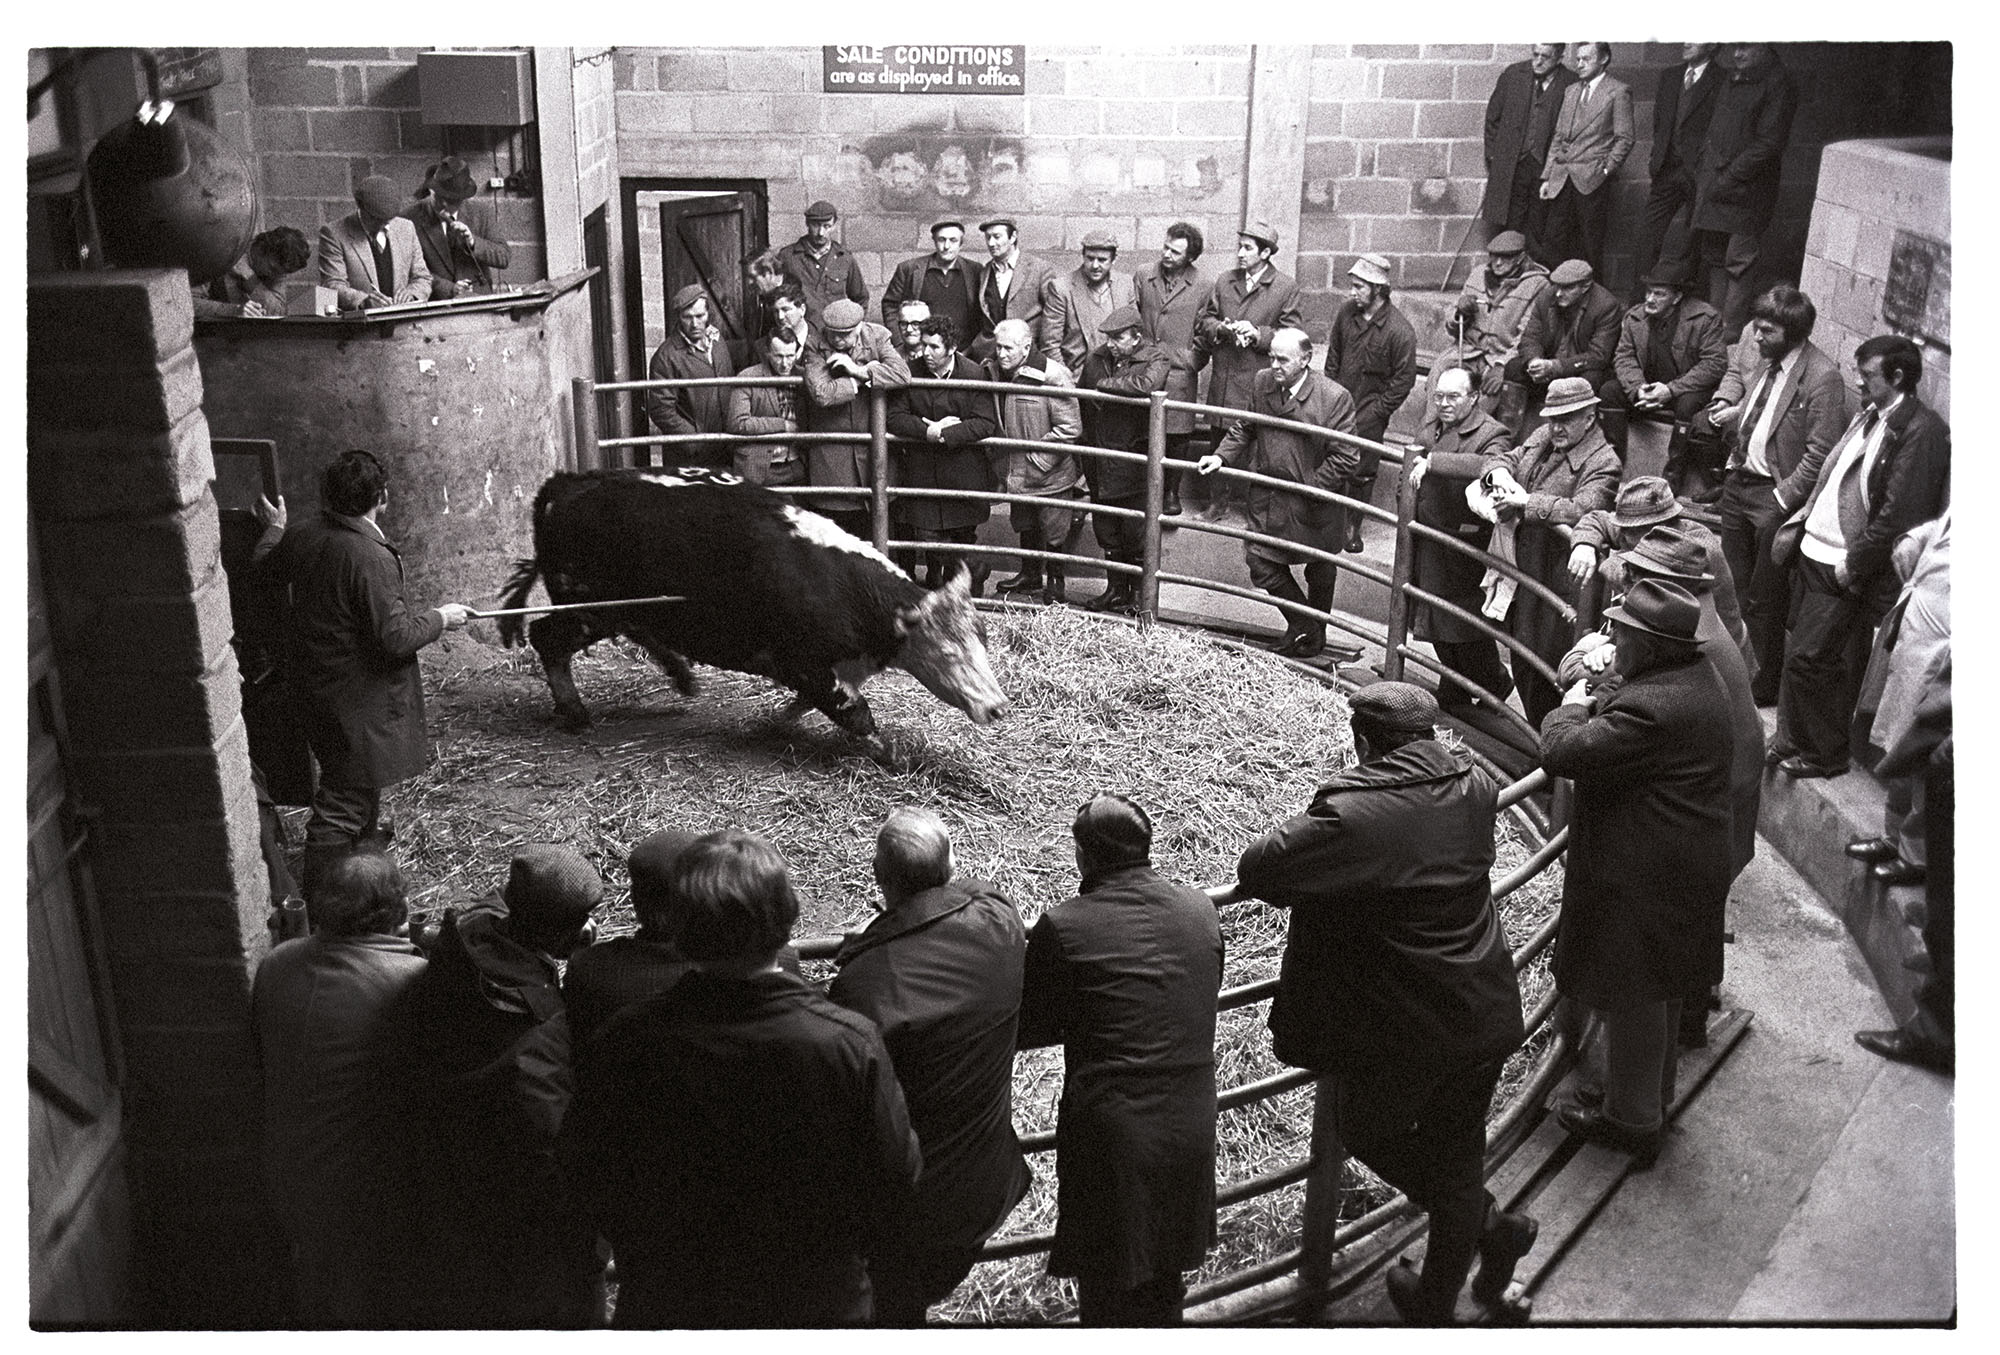 James Ravilious Cattle Auction